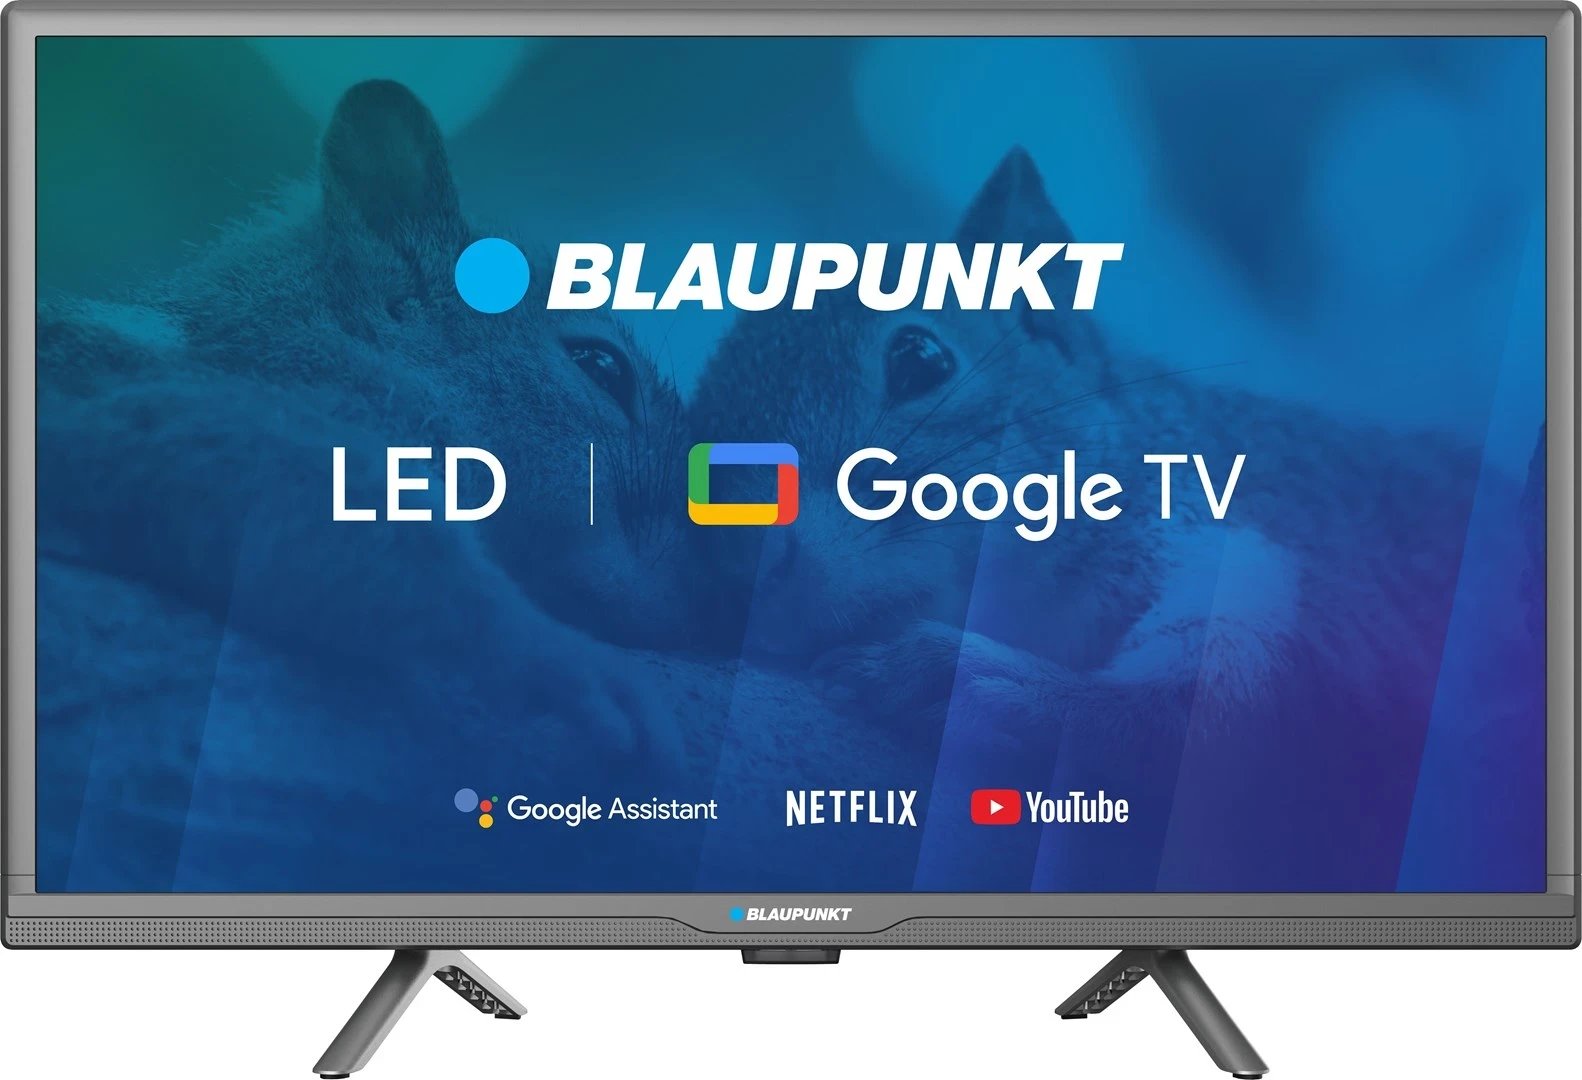 Televizor Blaupunkt 24HBG5000S 24", HD LED, GoogleTV, zi